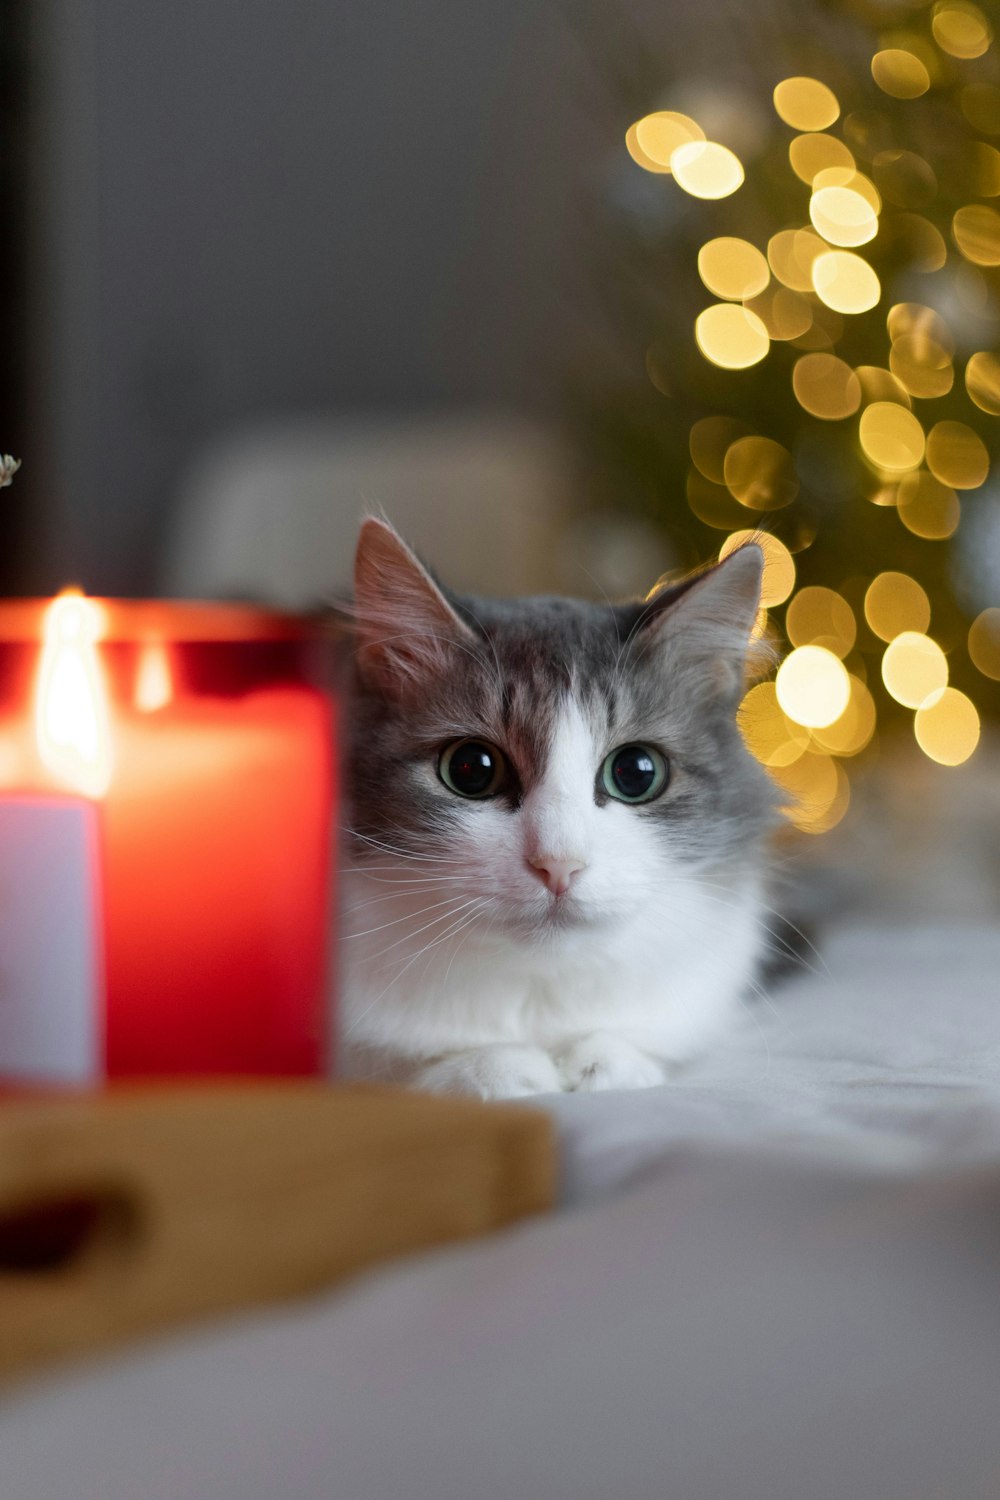 촛불 옆에 앉아 있는 회색과 흰색 고양이